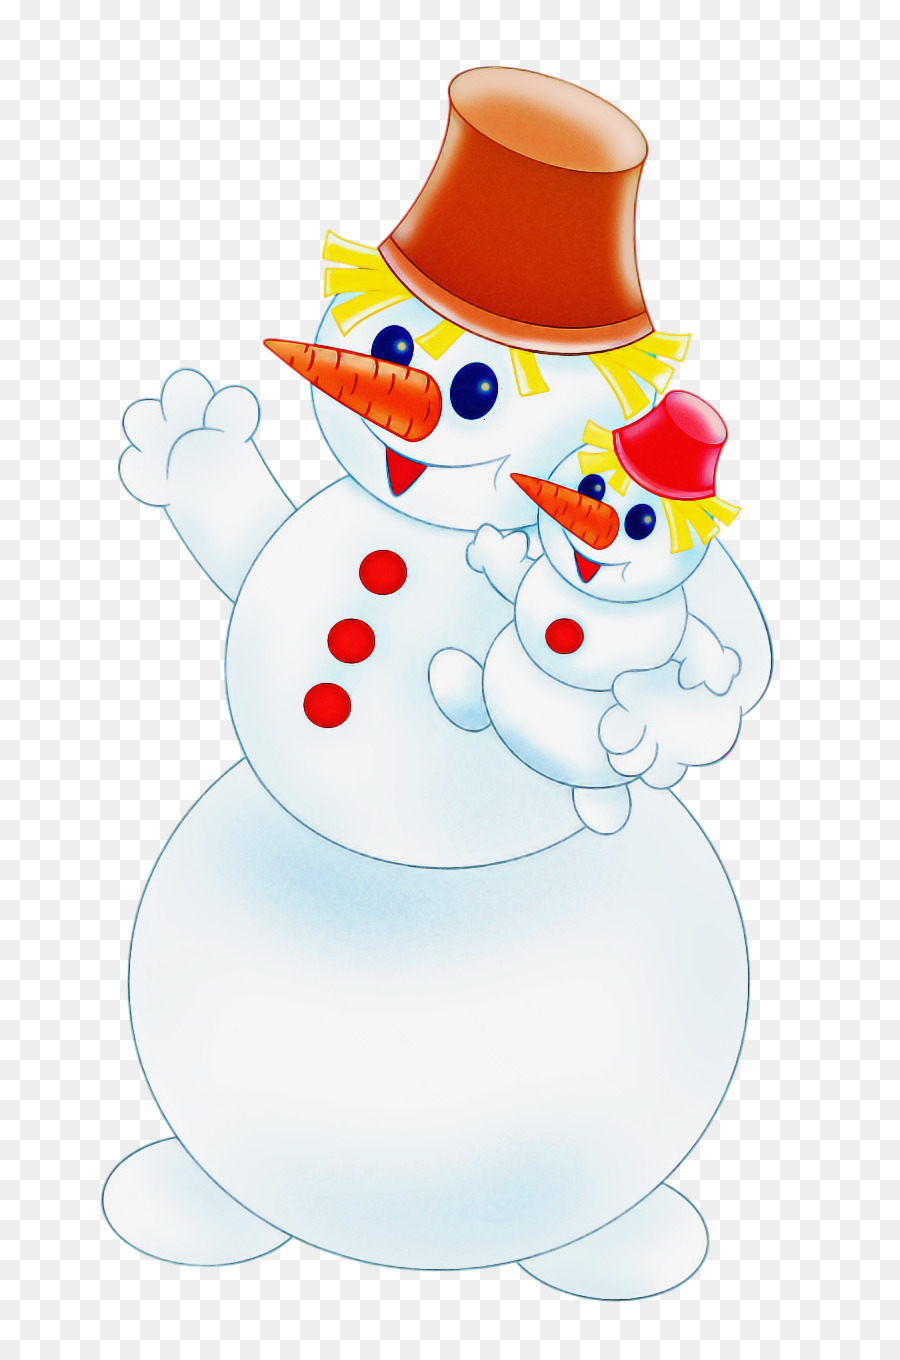 Christmas snowman snowman winter